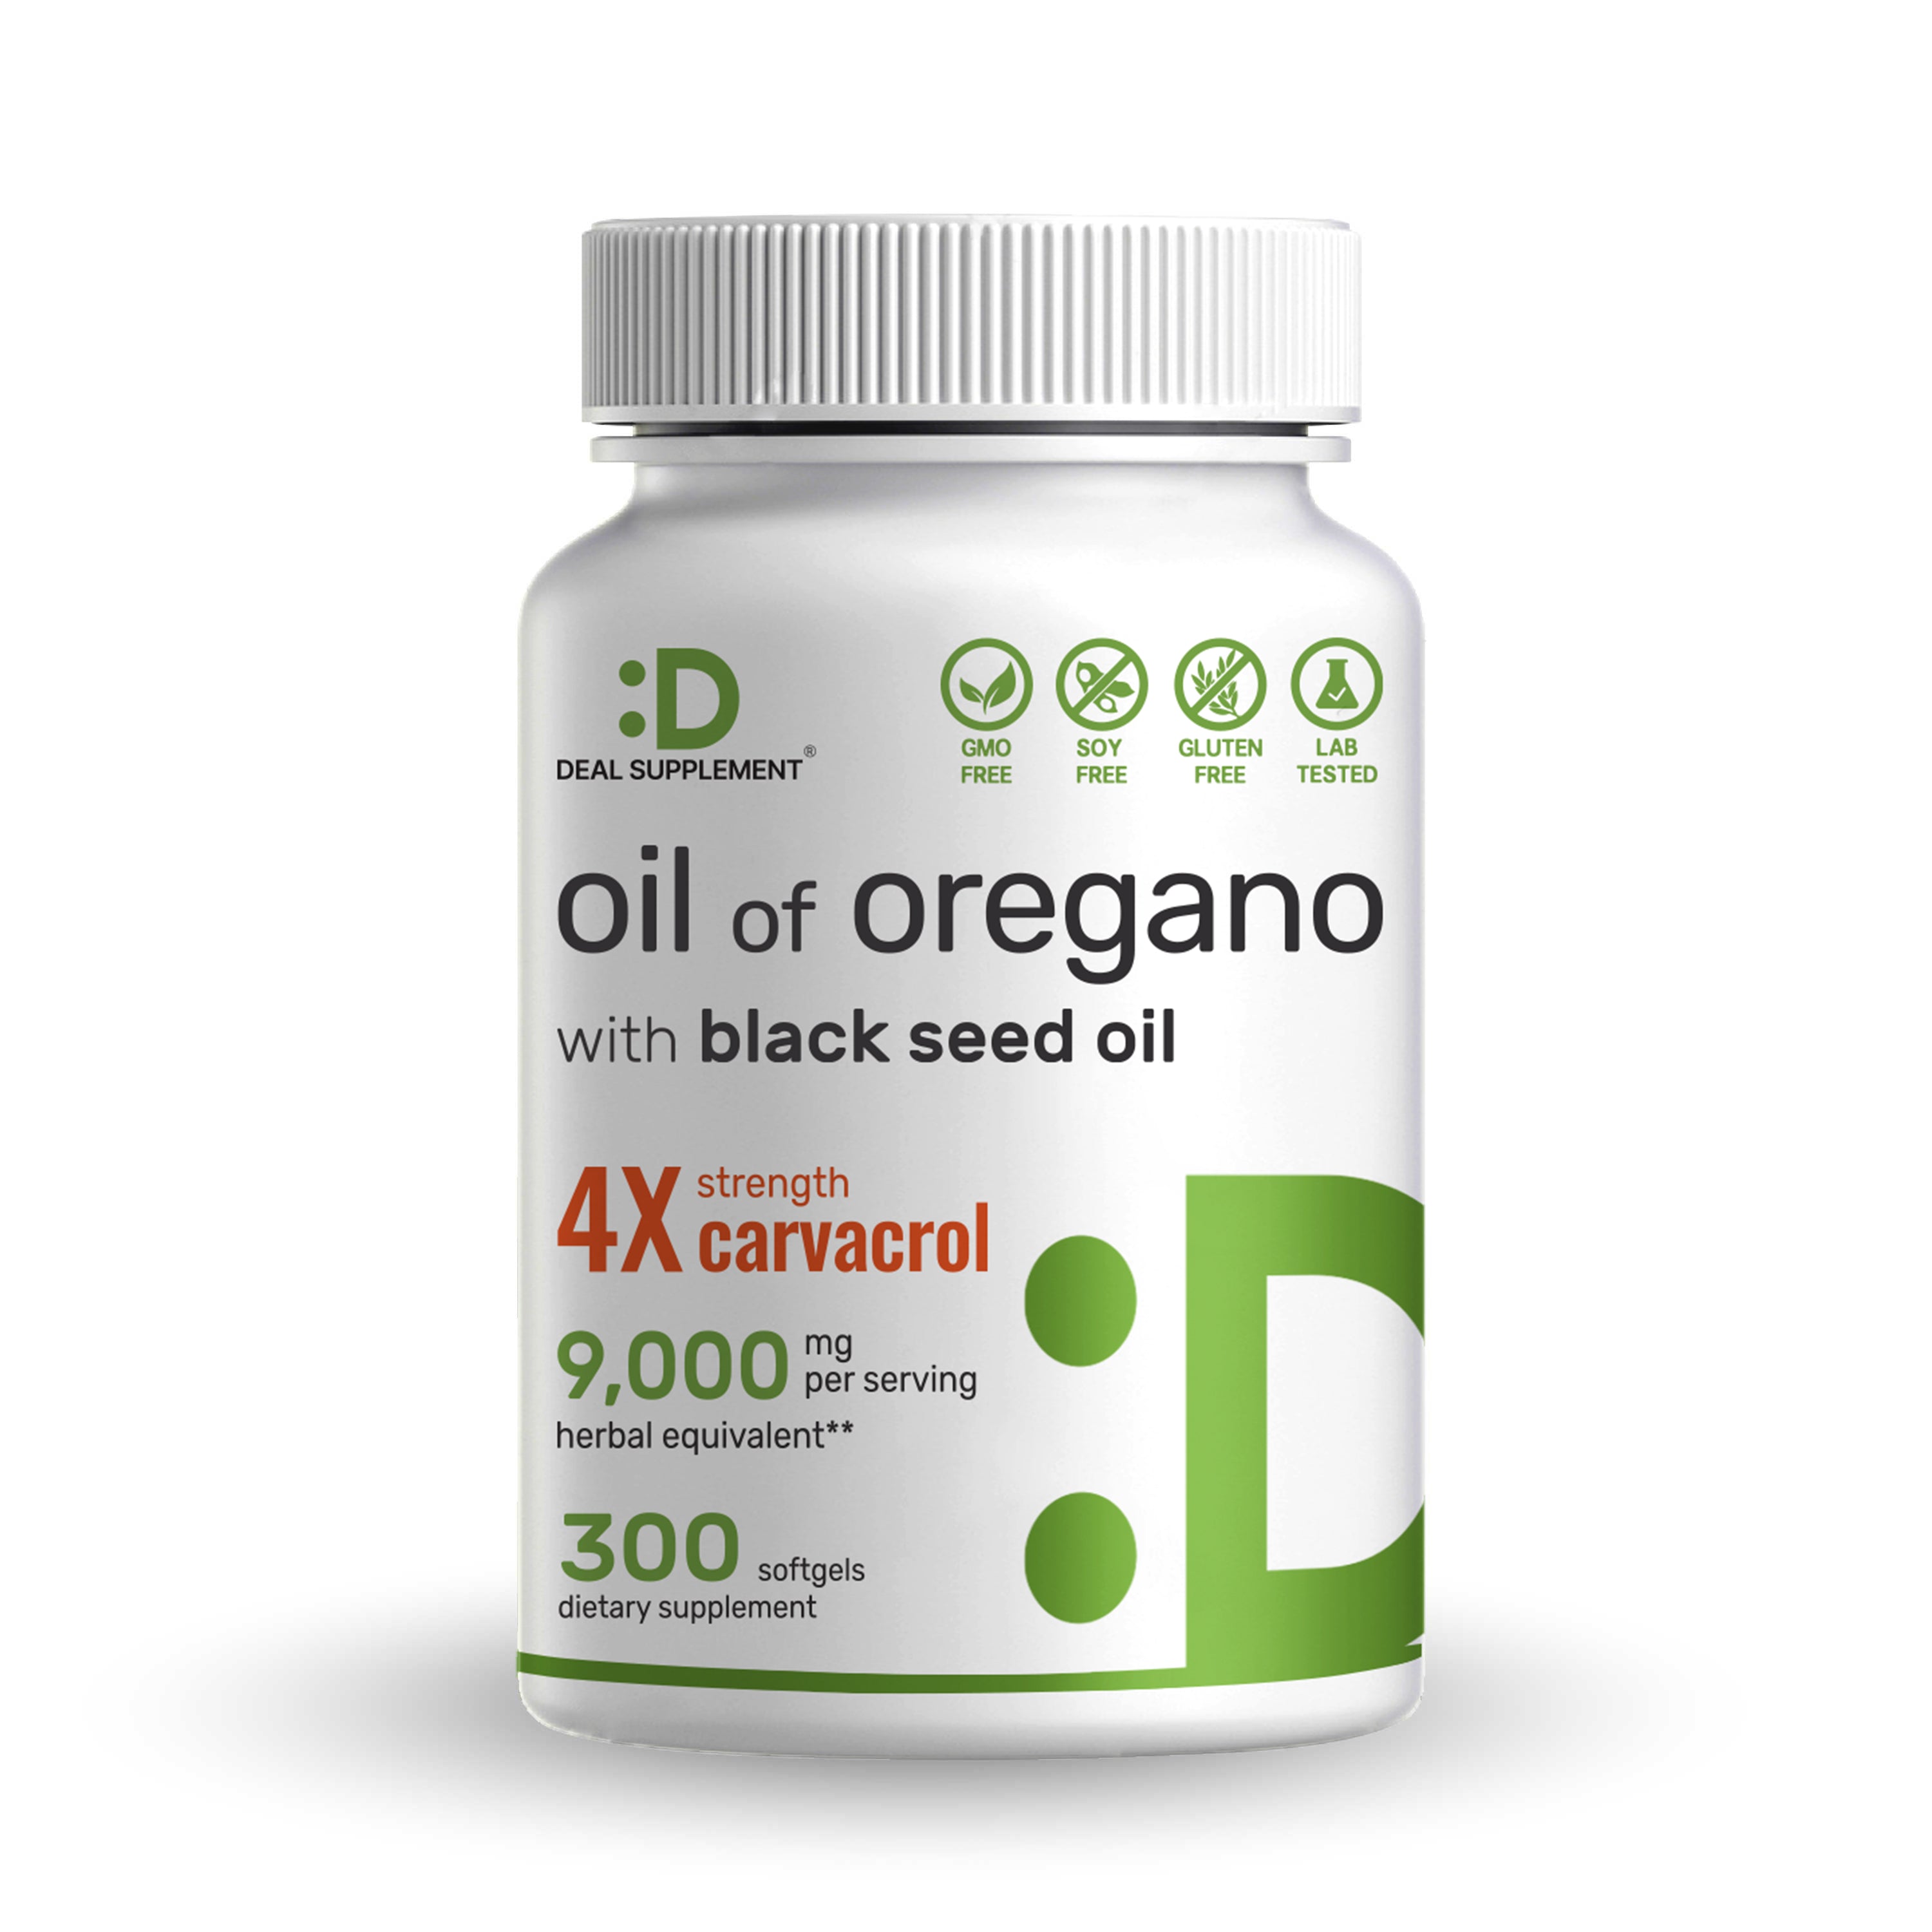 DEAL SUPPLEMENT Cápsulas blandas de aceite de orégano con aceite de semilla  negra, 9,000 mg por porción, 300 unidades - extracto 30:1, carvacrol